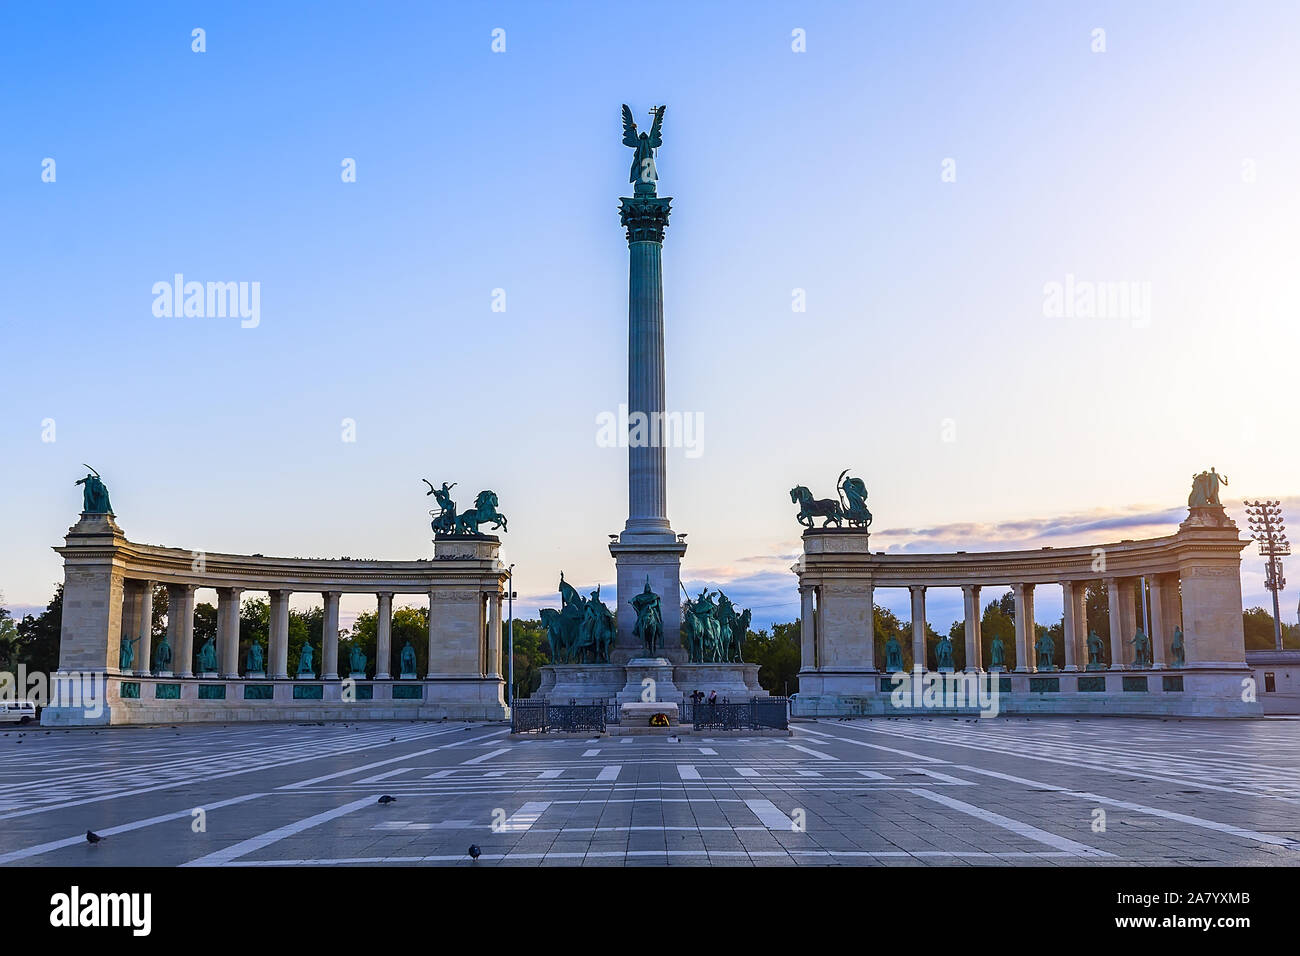 La bellissima città di Budapest, una splendida vista della Piazza degli Eroi, al centro del quale è un monumento per il nuovo millennio Foto Stock